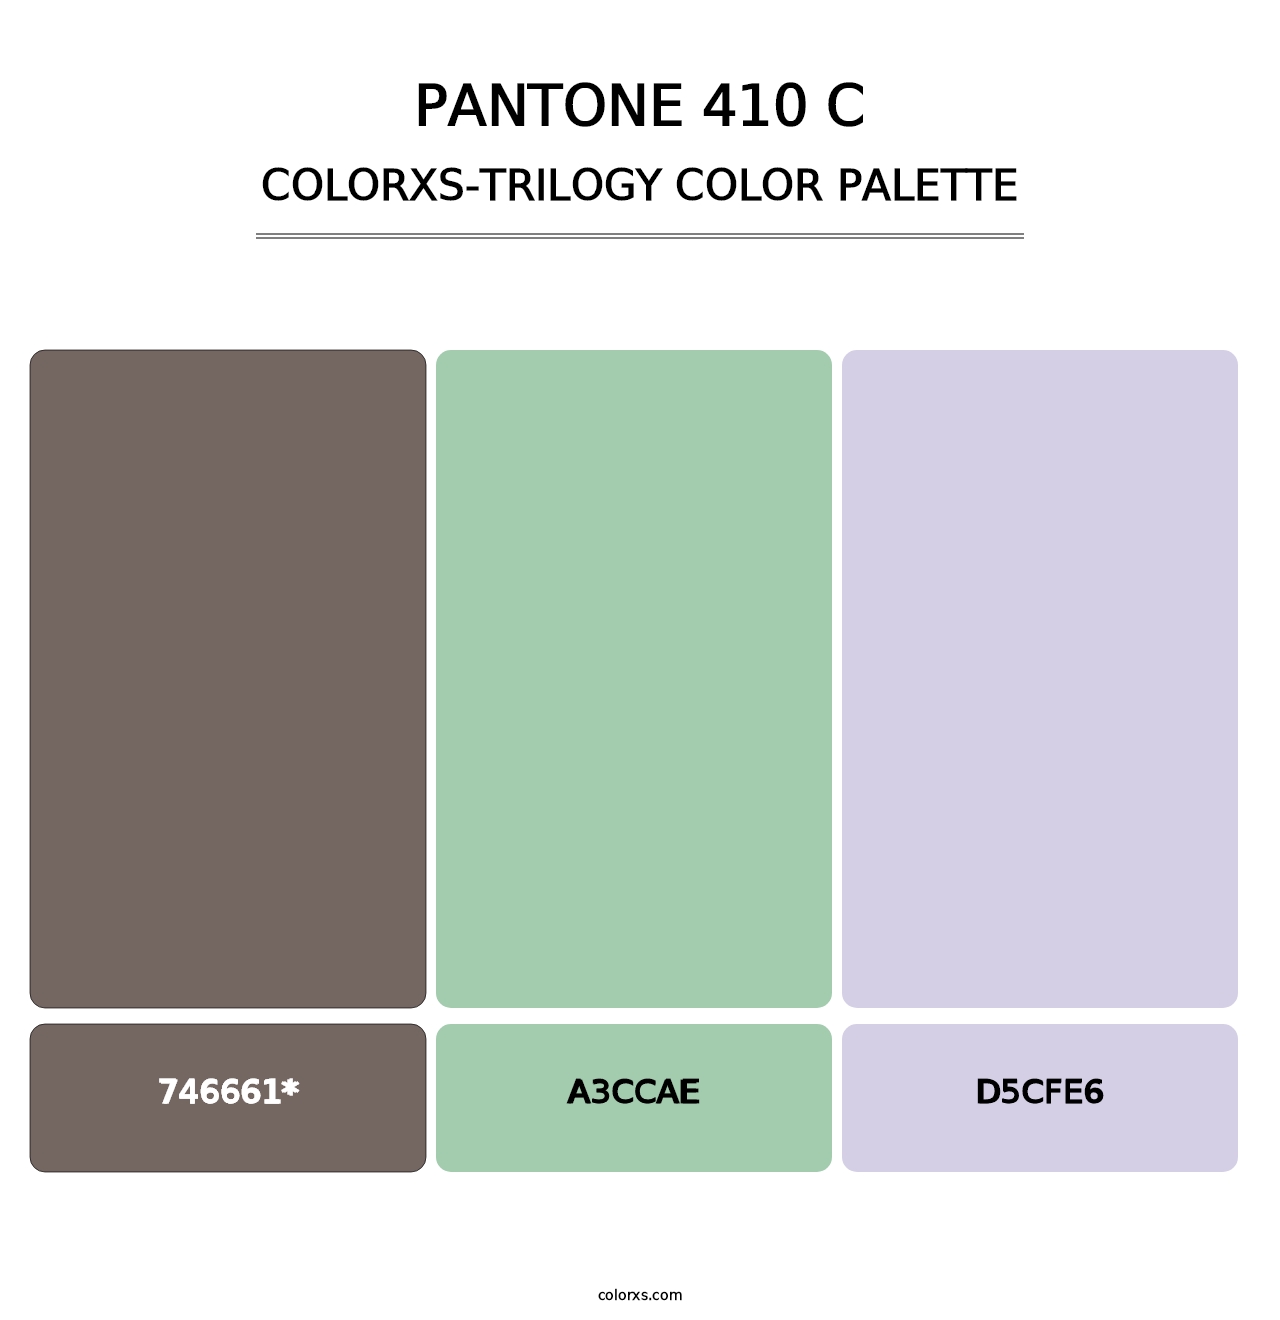 PANTONE 410 C - Colorxs Trilogy Palette